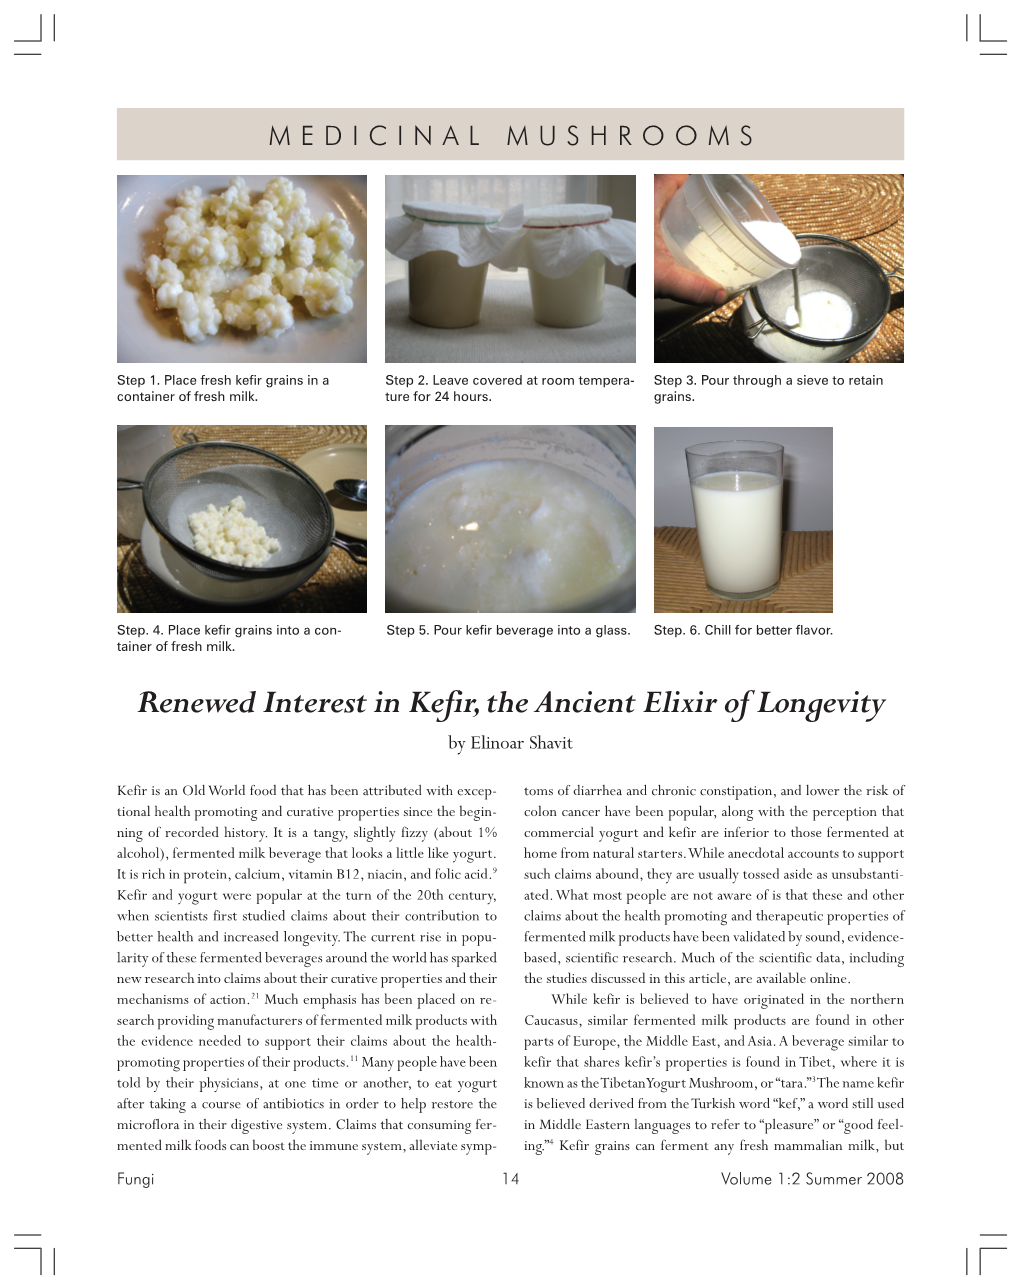 Renewed Interest in Kefir, the Ancient Elixir of Longevity by Elinoar Shavit